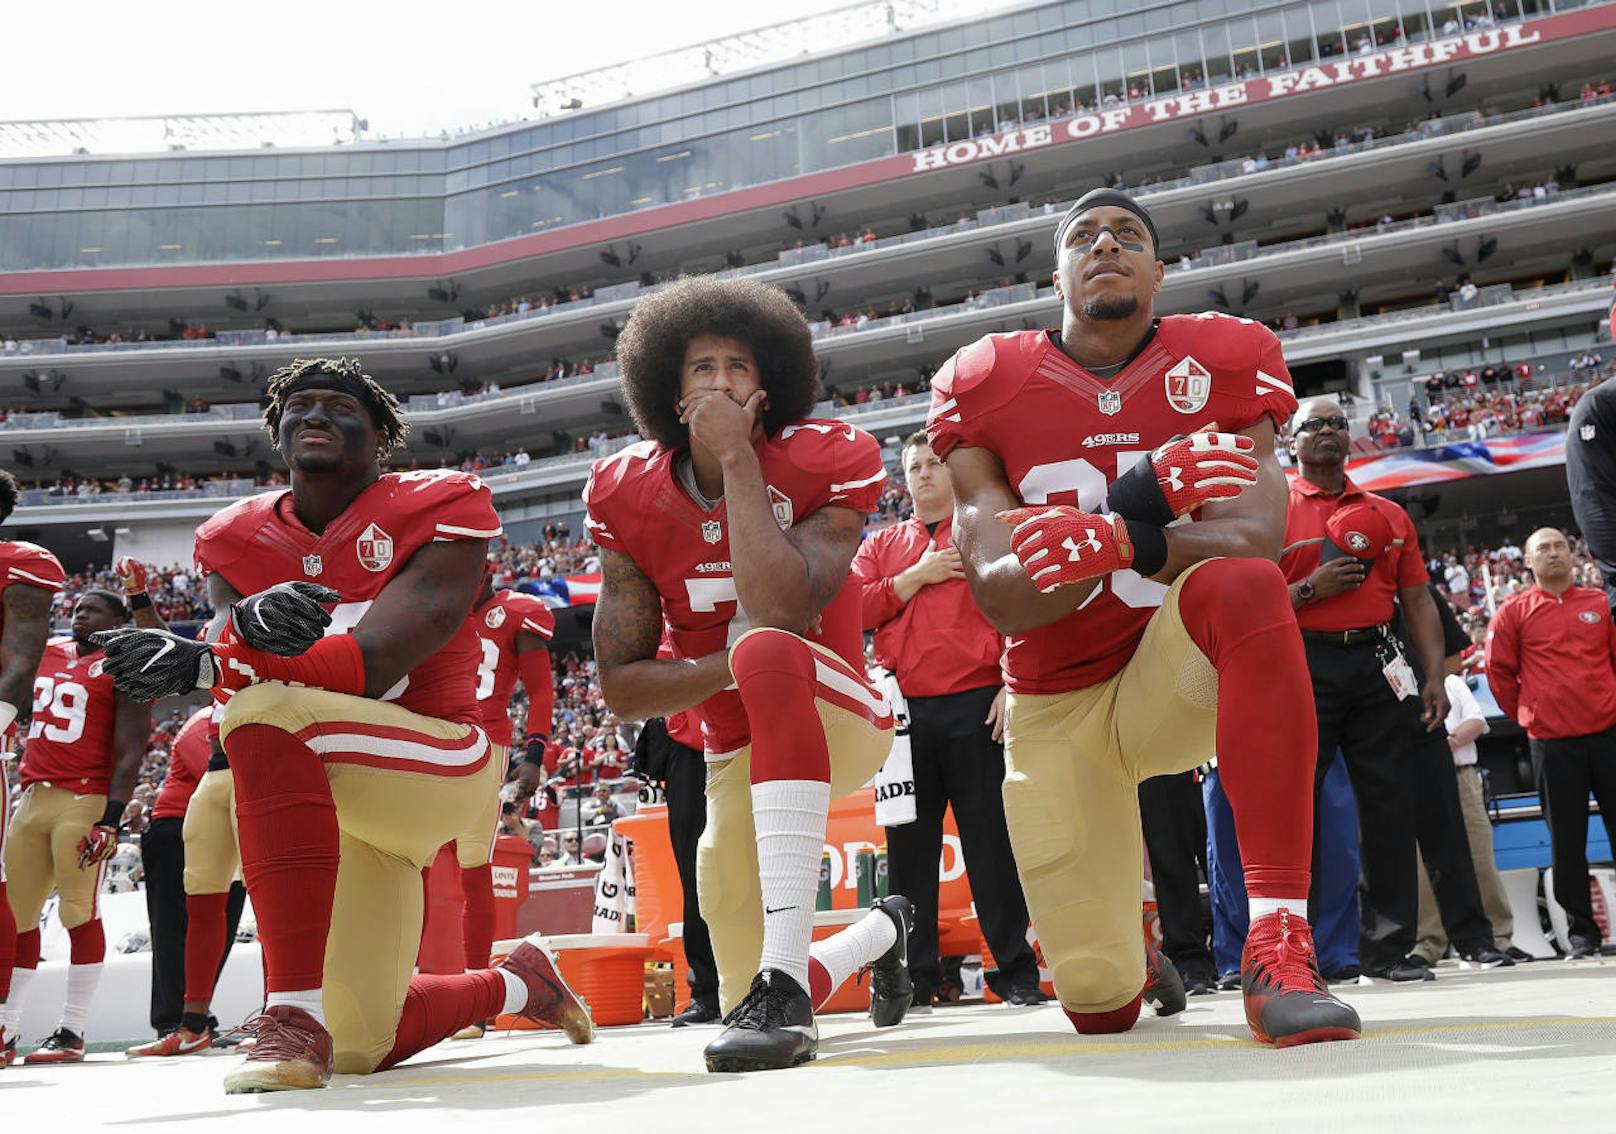 NFL-Quarterback Colin Kaepernick kniete sich 2016 während der US-Nationalhymne nieder, um gegen Rassismus und Polizeigewalt gegen Schwarze in den USA zu demonstrieren. Er verlor den Vertrag bei den San Francisco 49ers. 